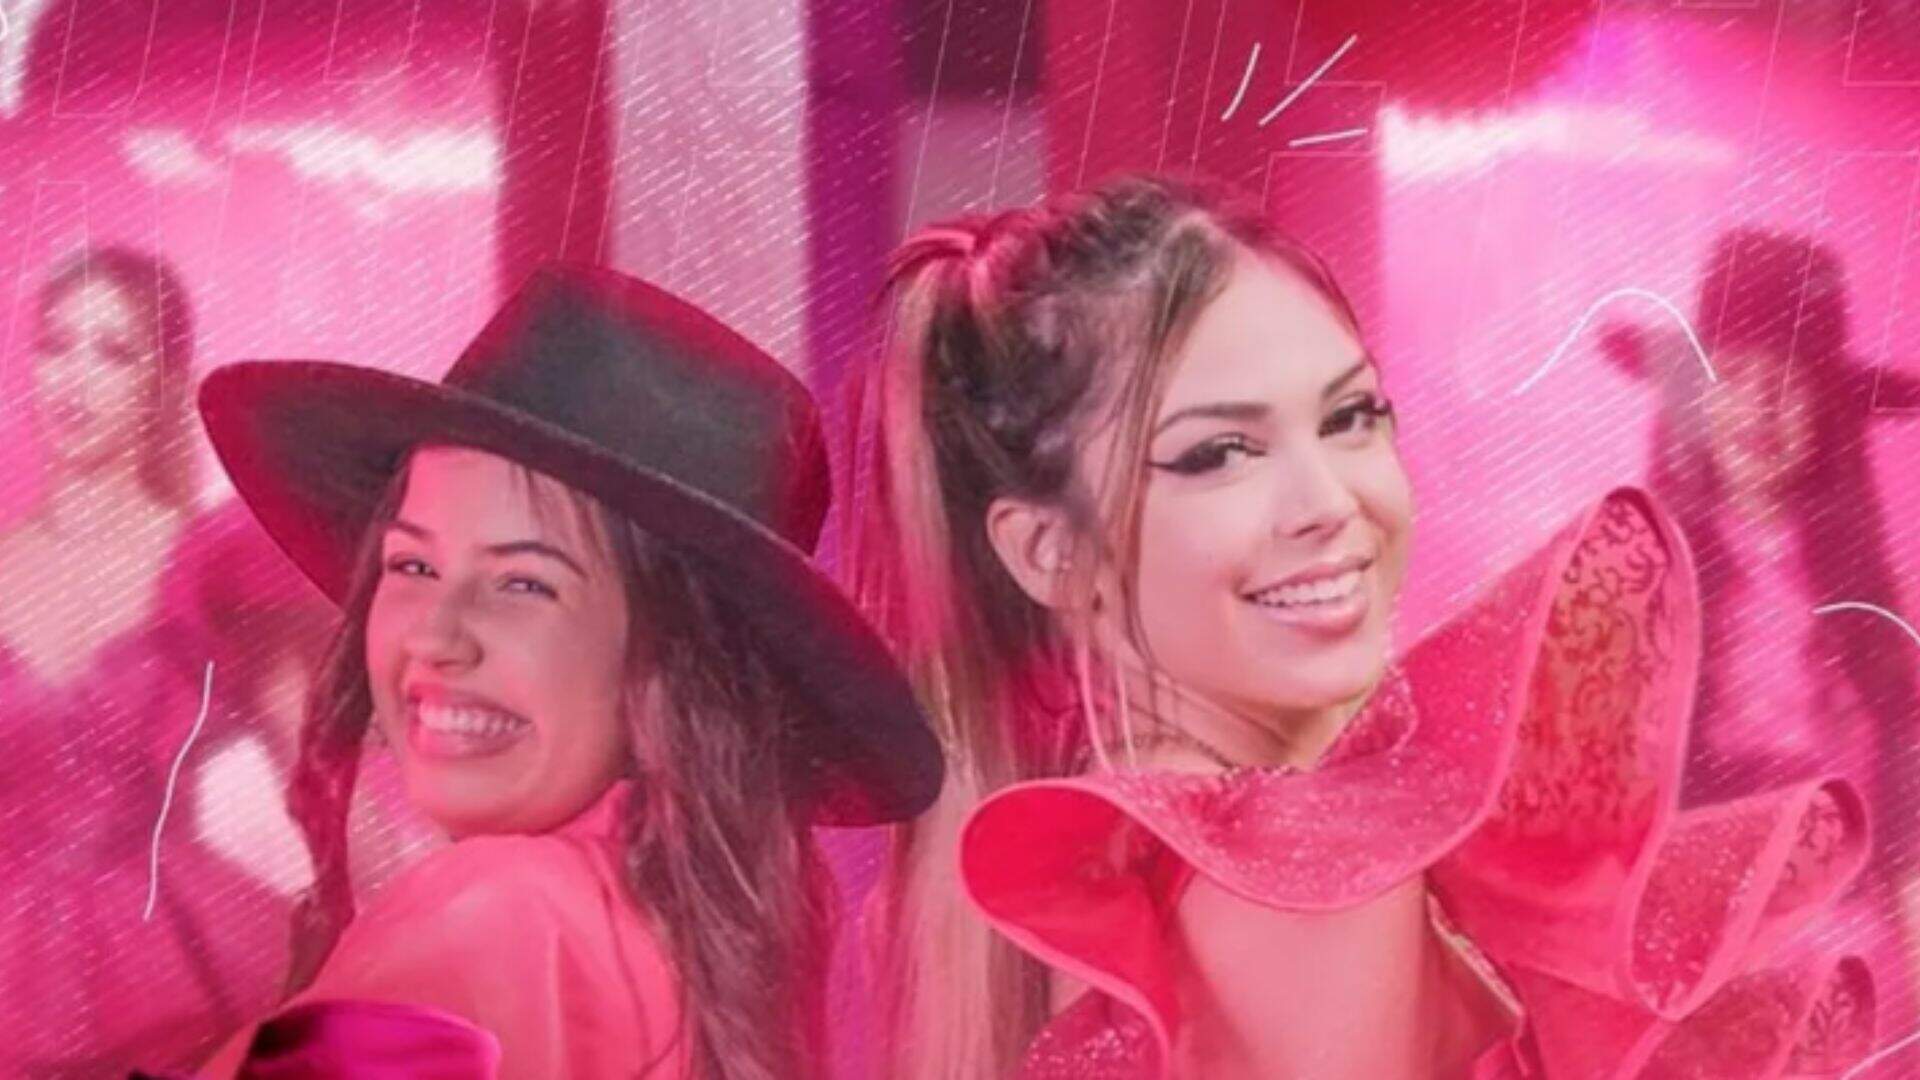 Com muita coreografia, Melody cria a versão Barbie sertaneja no clipe dançante de “Barbie de Chapéu” ao lado de Paula Guilherme - Metropolitana FM